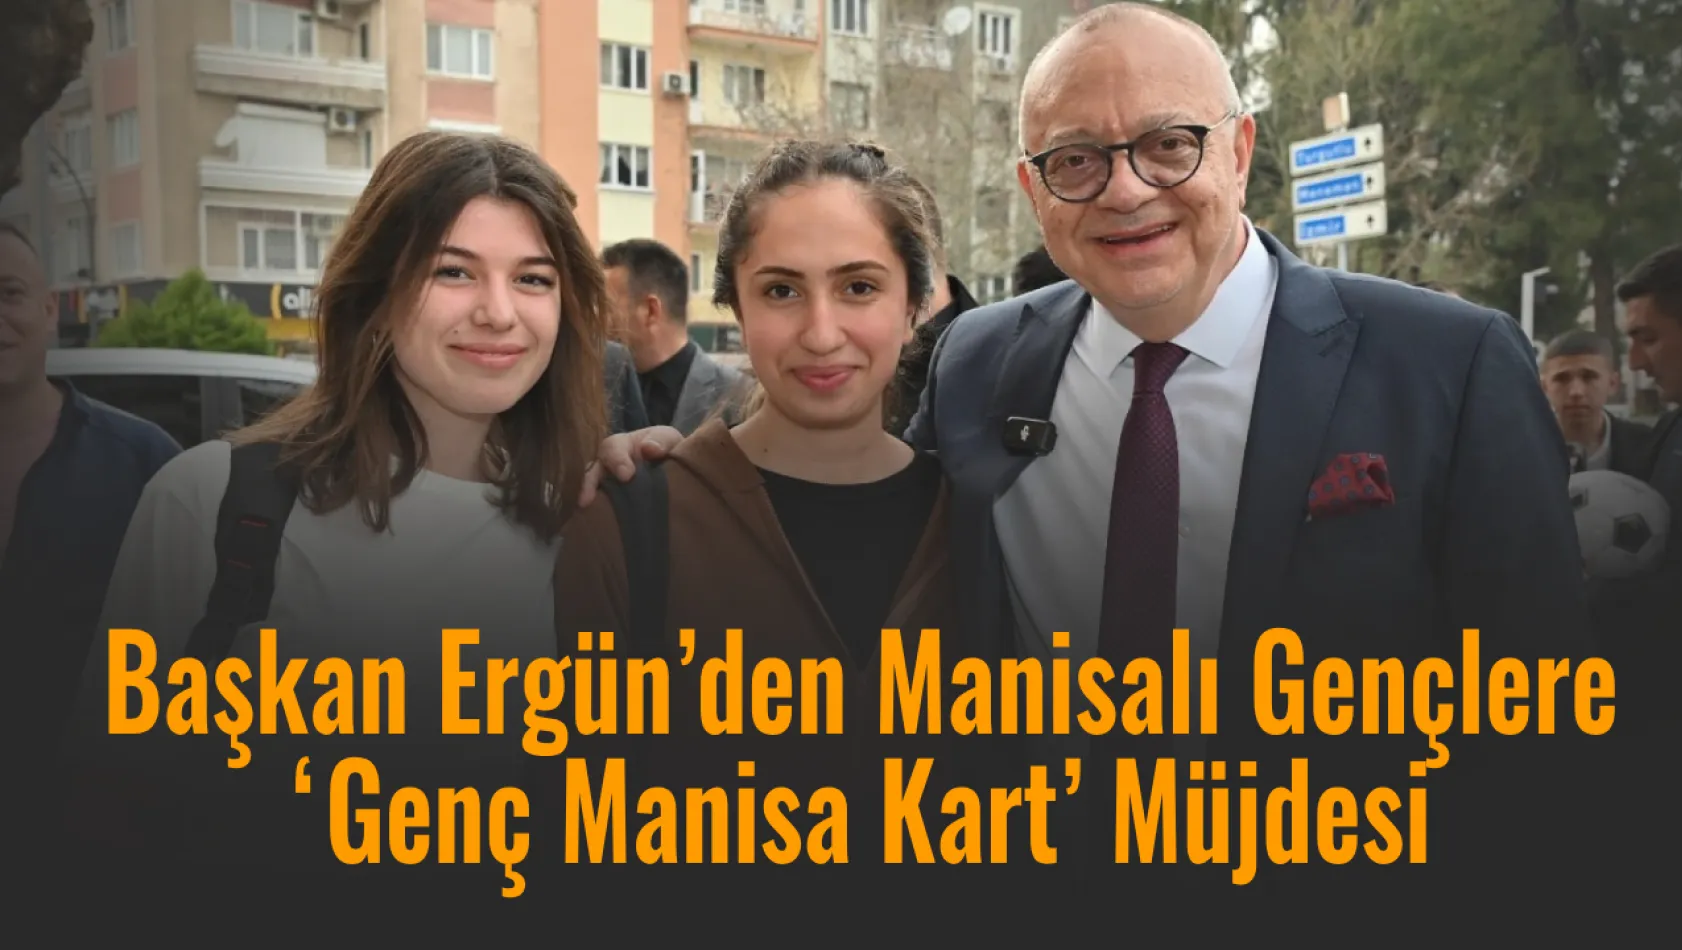 Başkan Ergün'den Manisalı Gençlere 'Genç Manisa Kart' Müjdesi